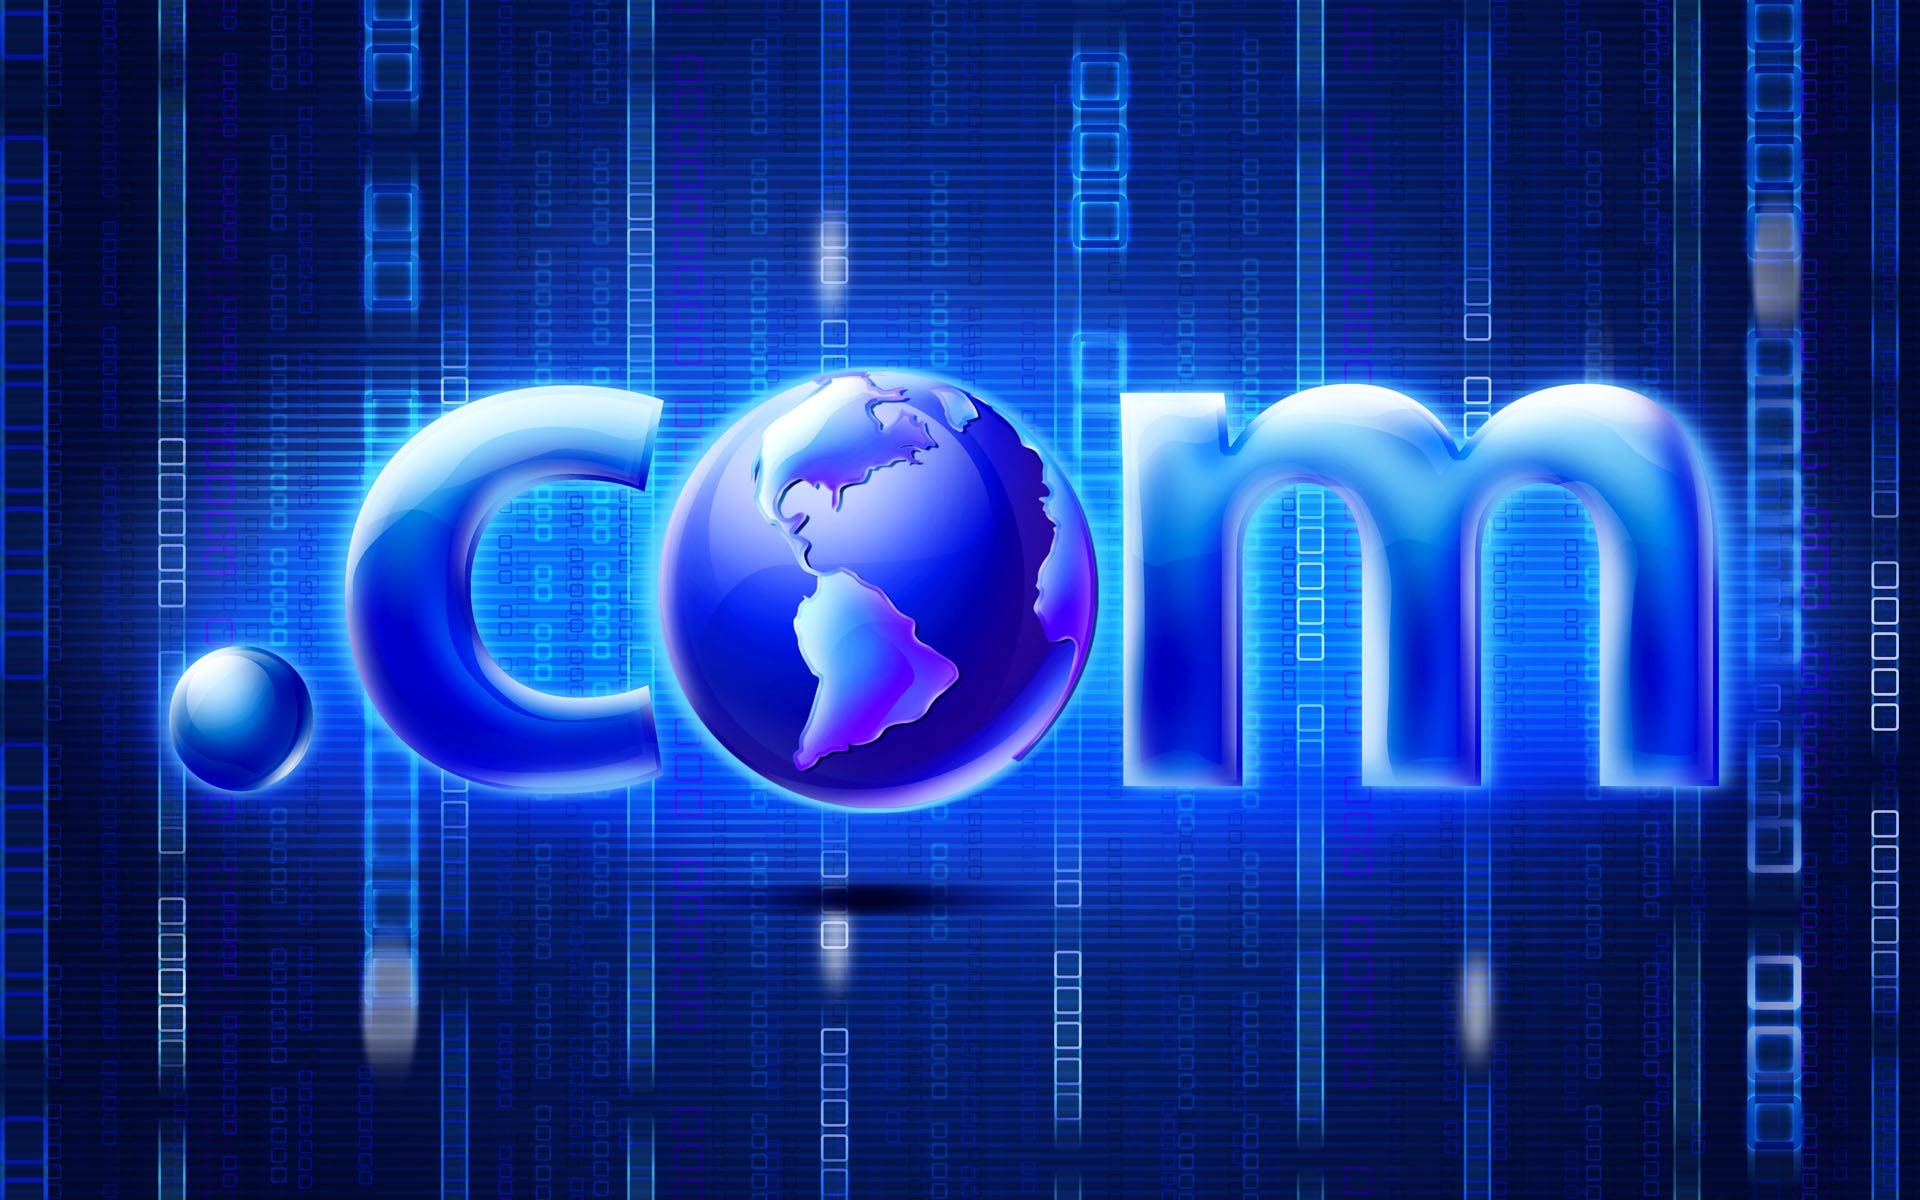 com Domain Registration | Buy a .com Domain Name Today